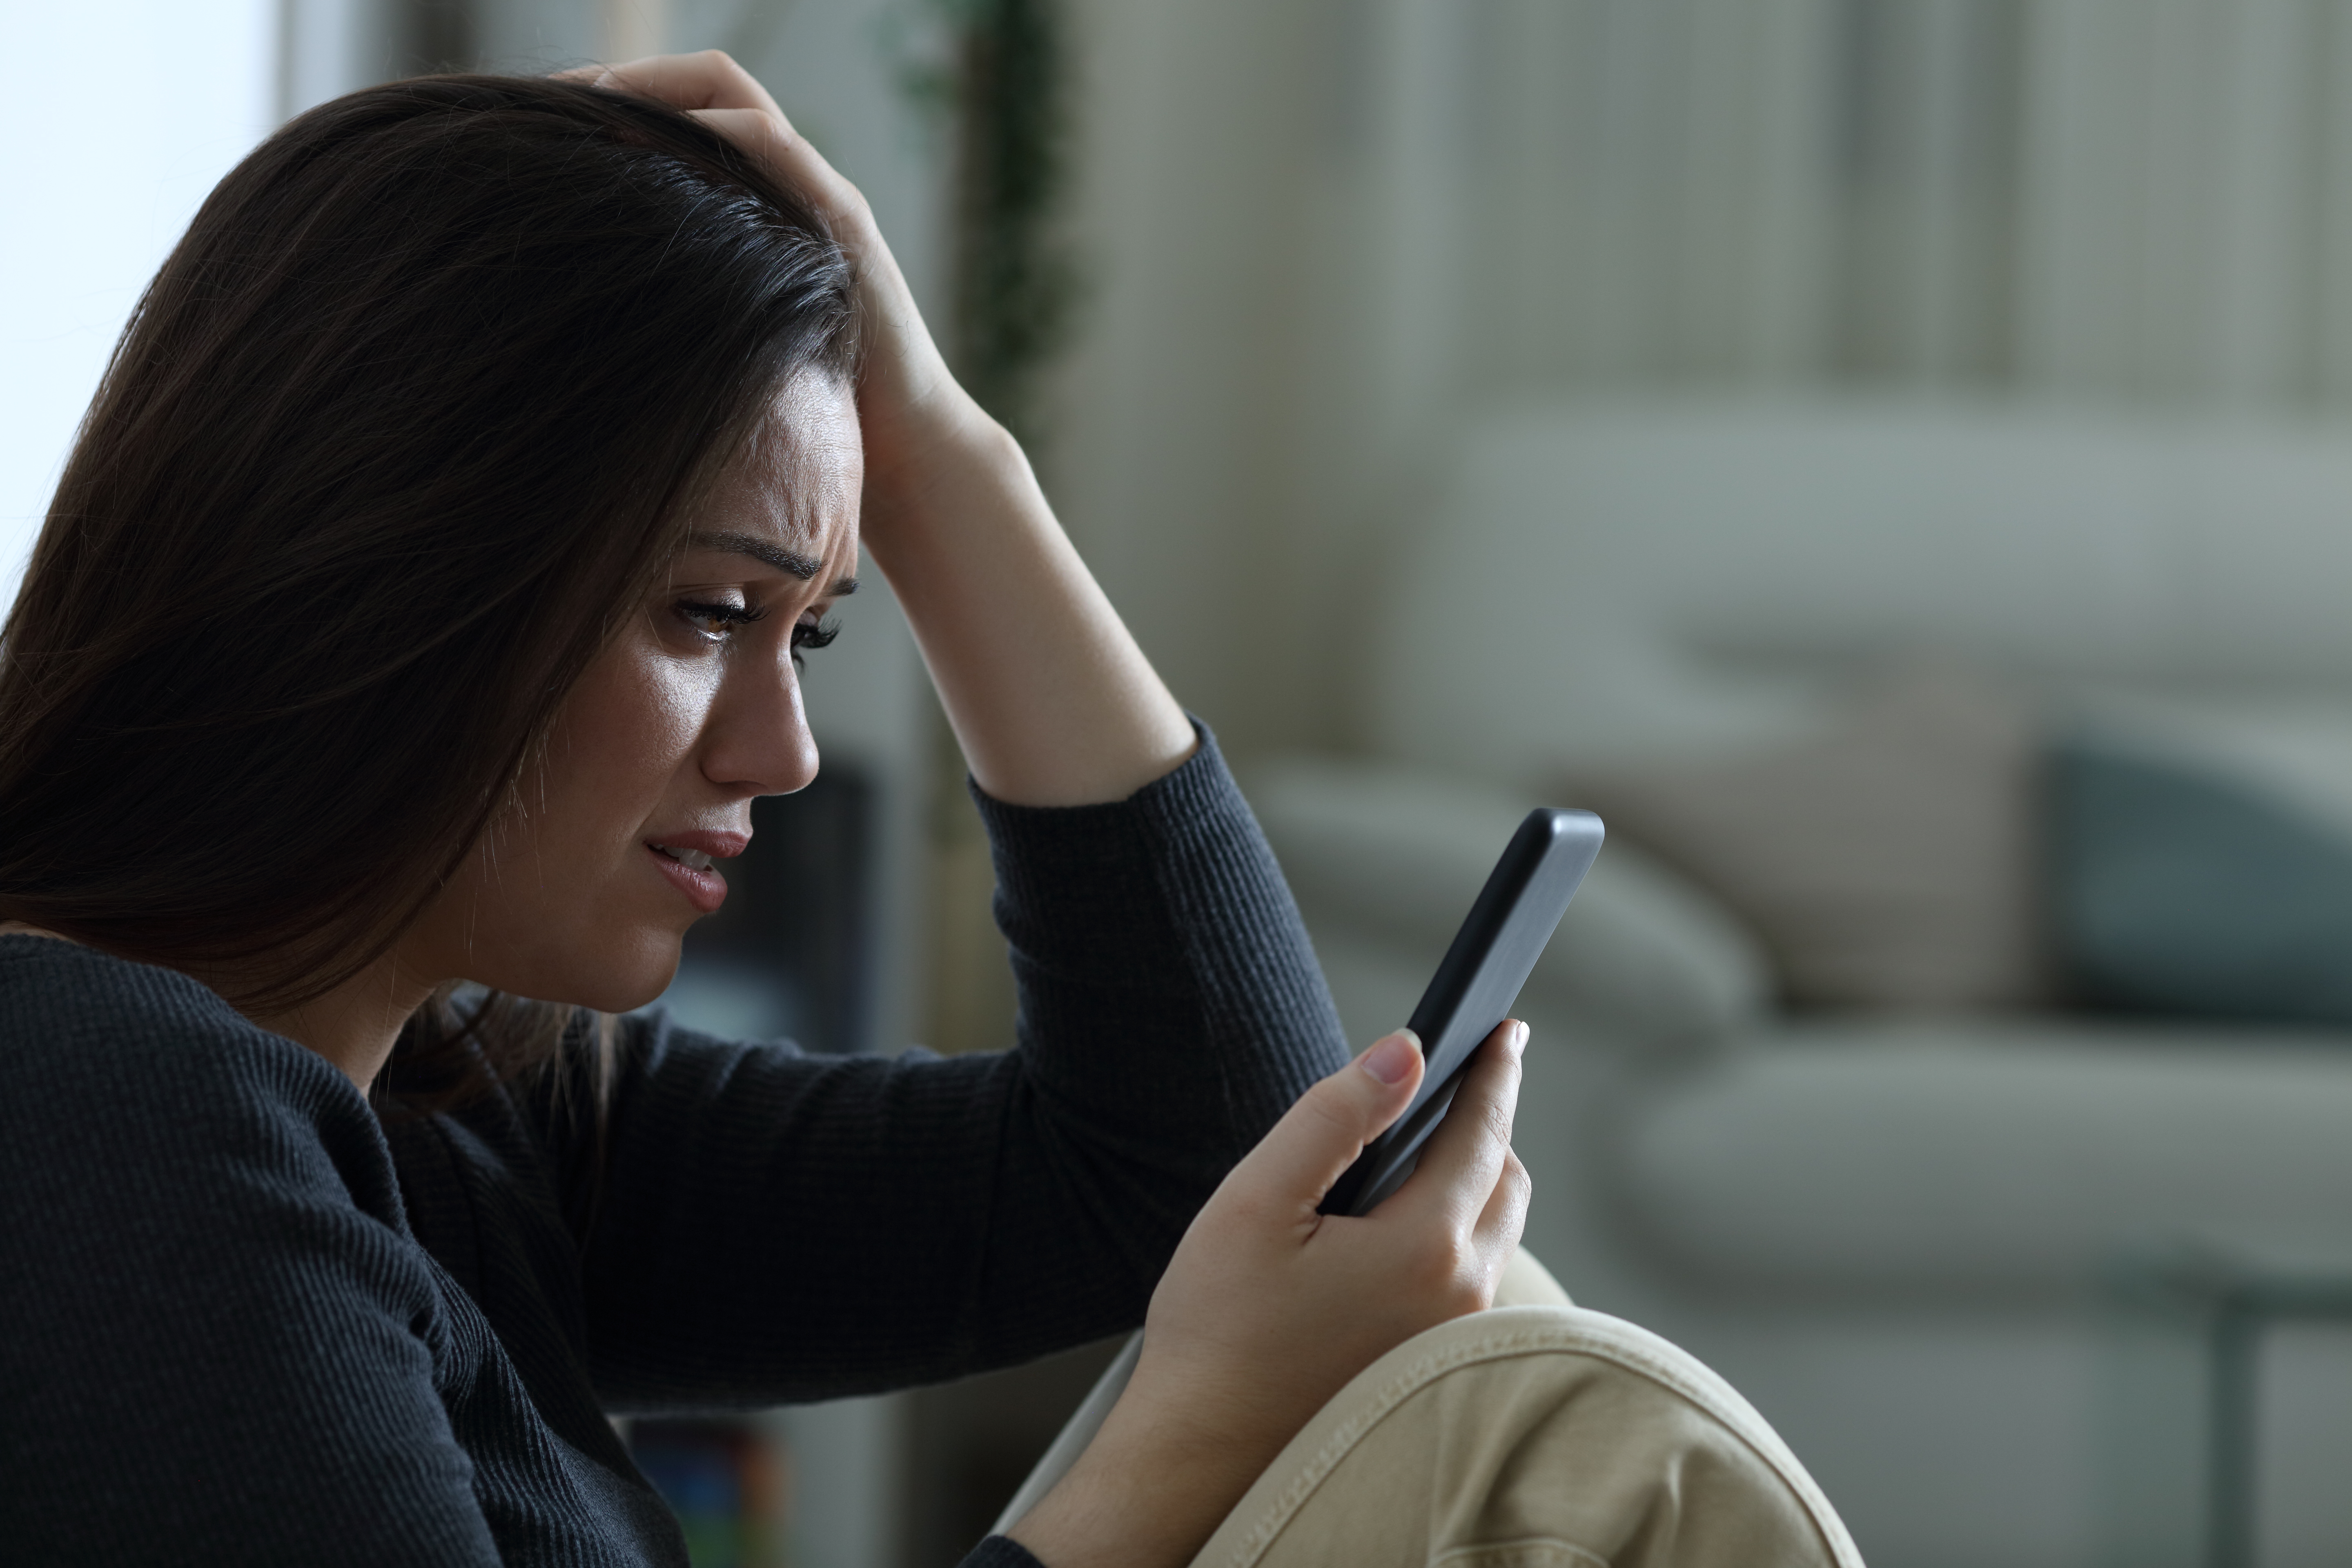 Eine Frau schaut traurig, während sie telefoniert | Quelle: Shutterstock